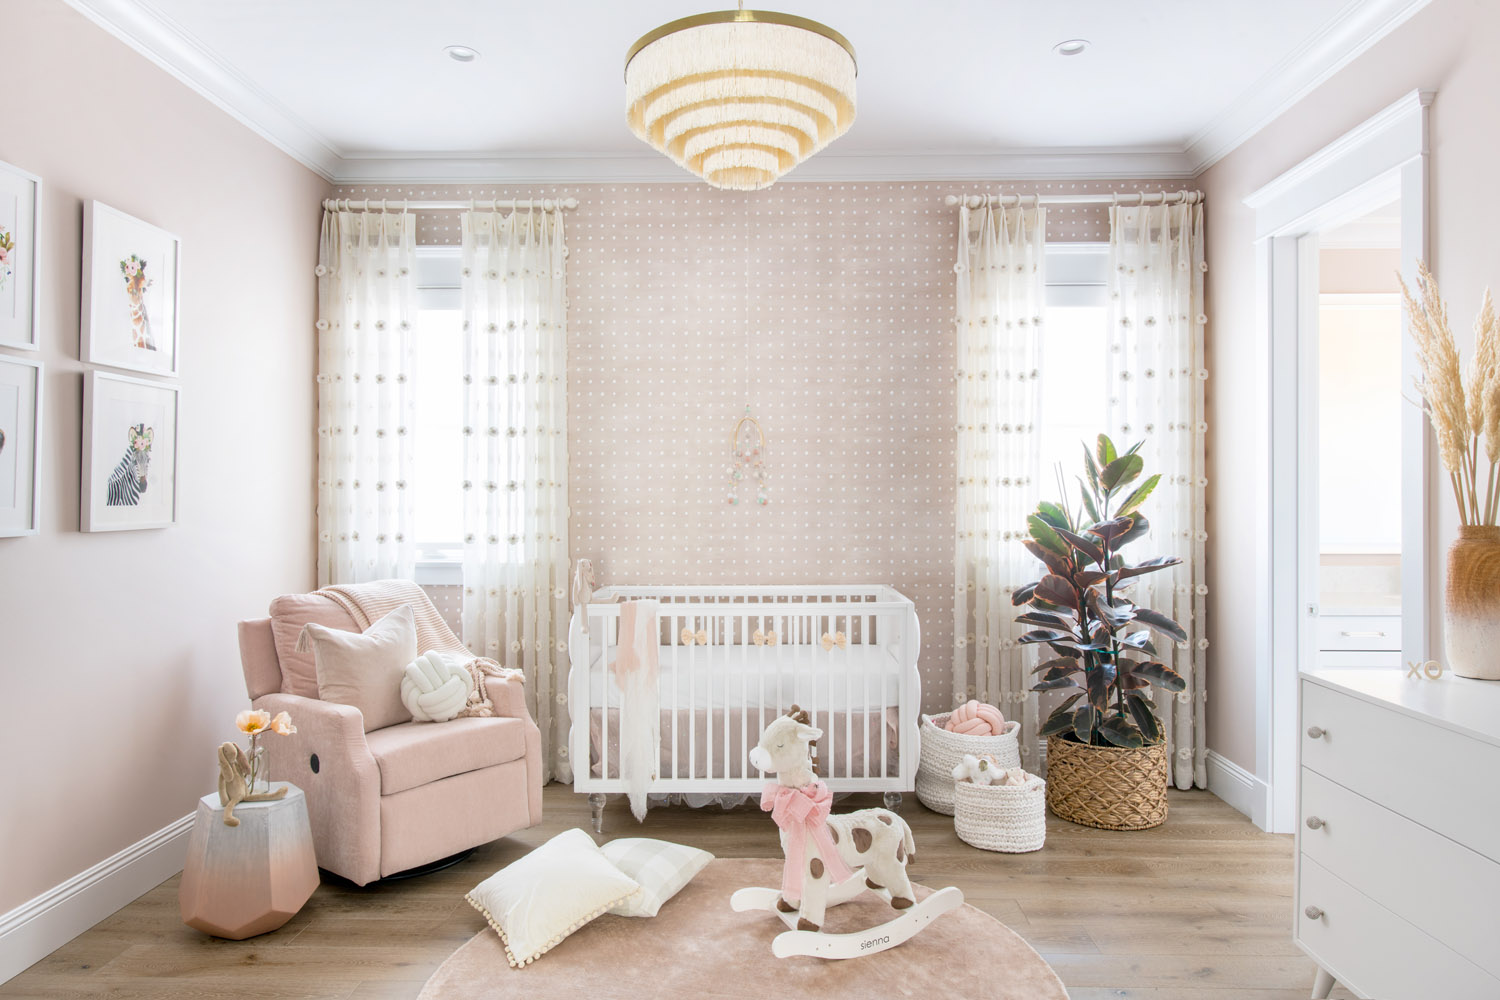 amenagement chambre bebe fille de couleur rose poudree et au mobilier blanc